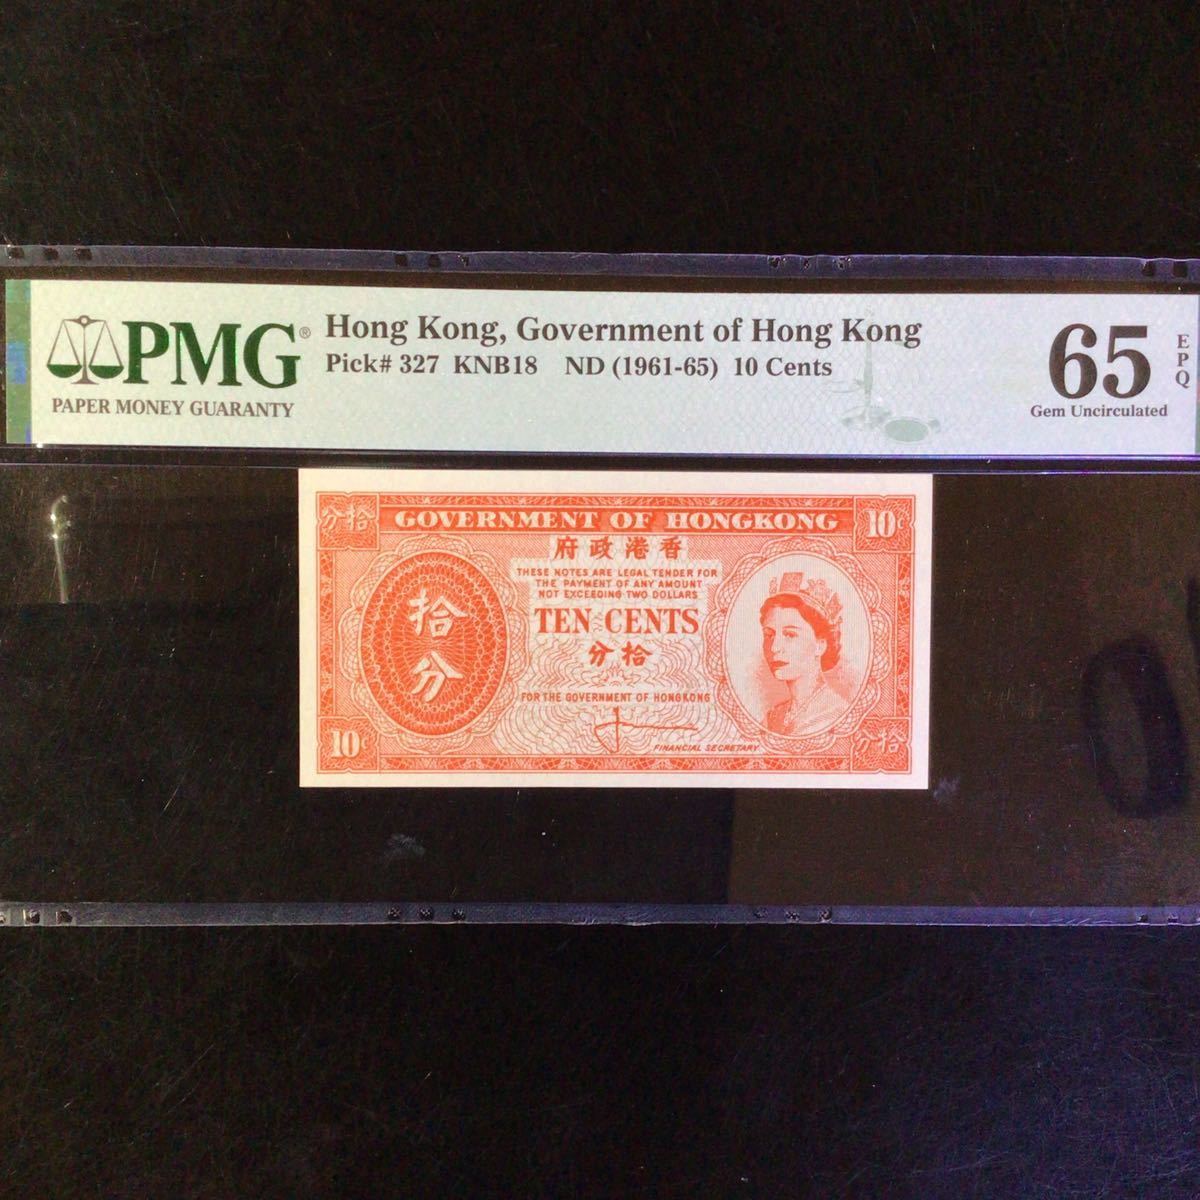 World Banknote Grading HONG KONG《Government of Hong Kong》10 Cents【1961-65】『PMG Grading Gem Uncirculated 65 EPQ』